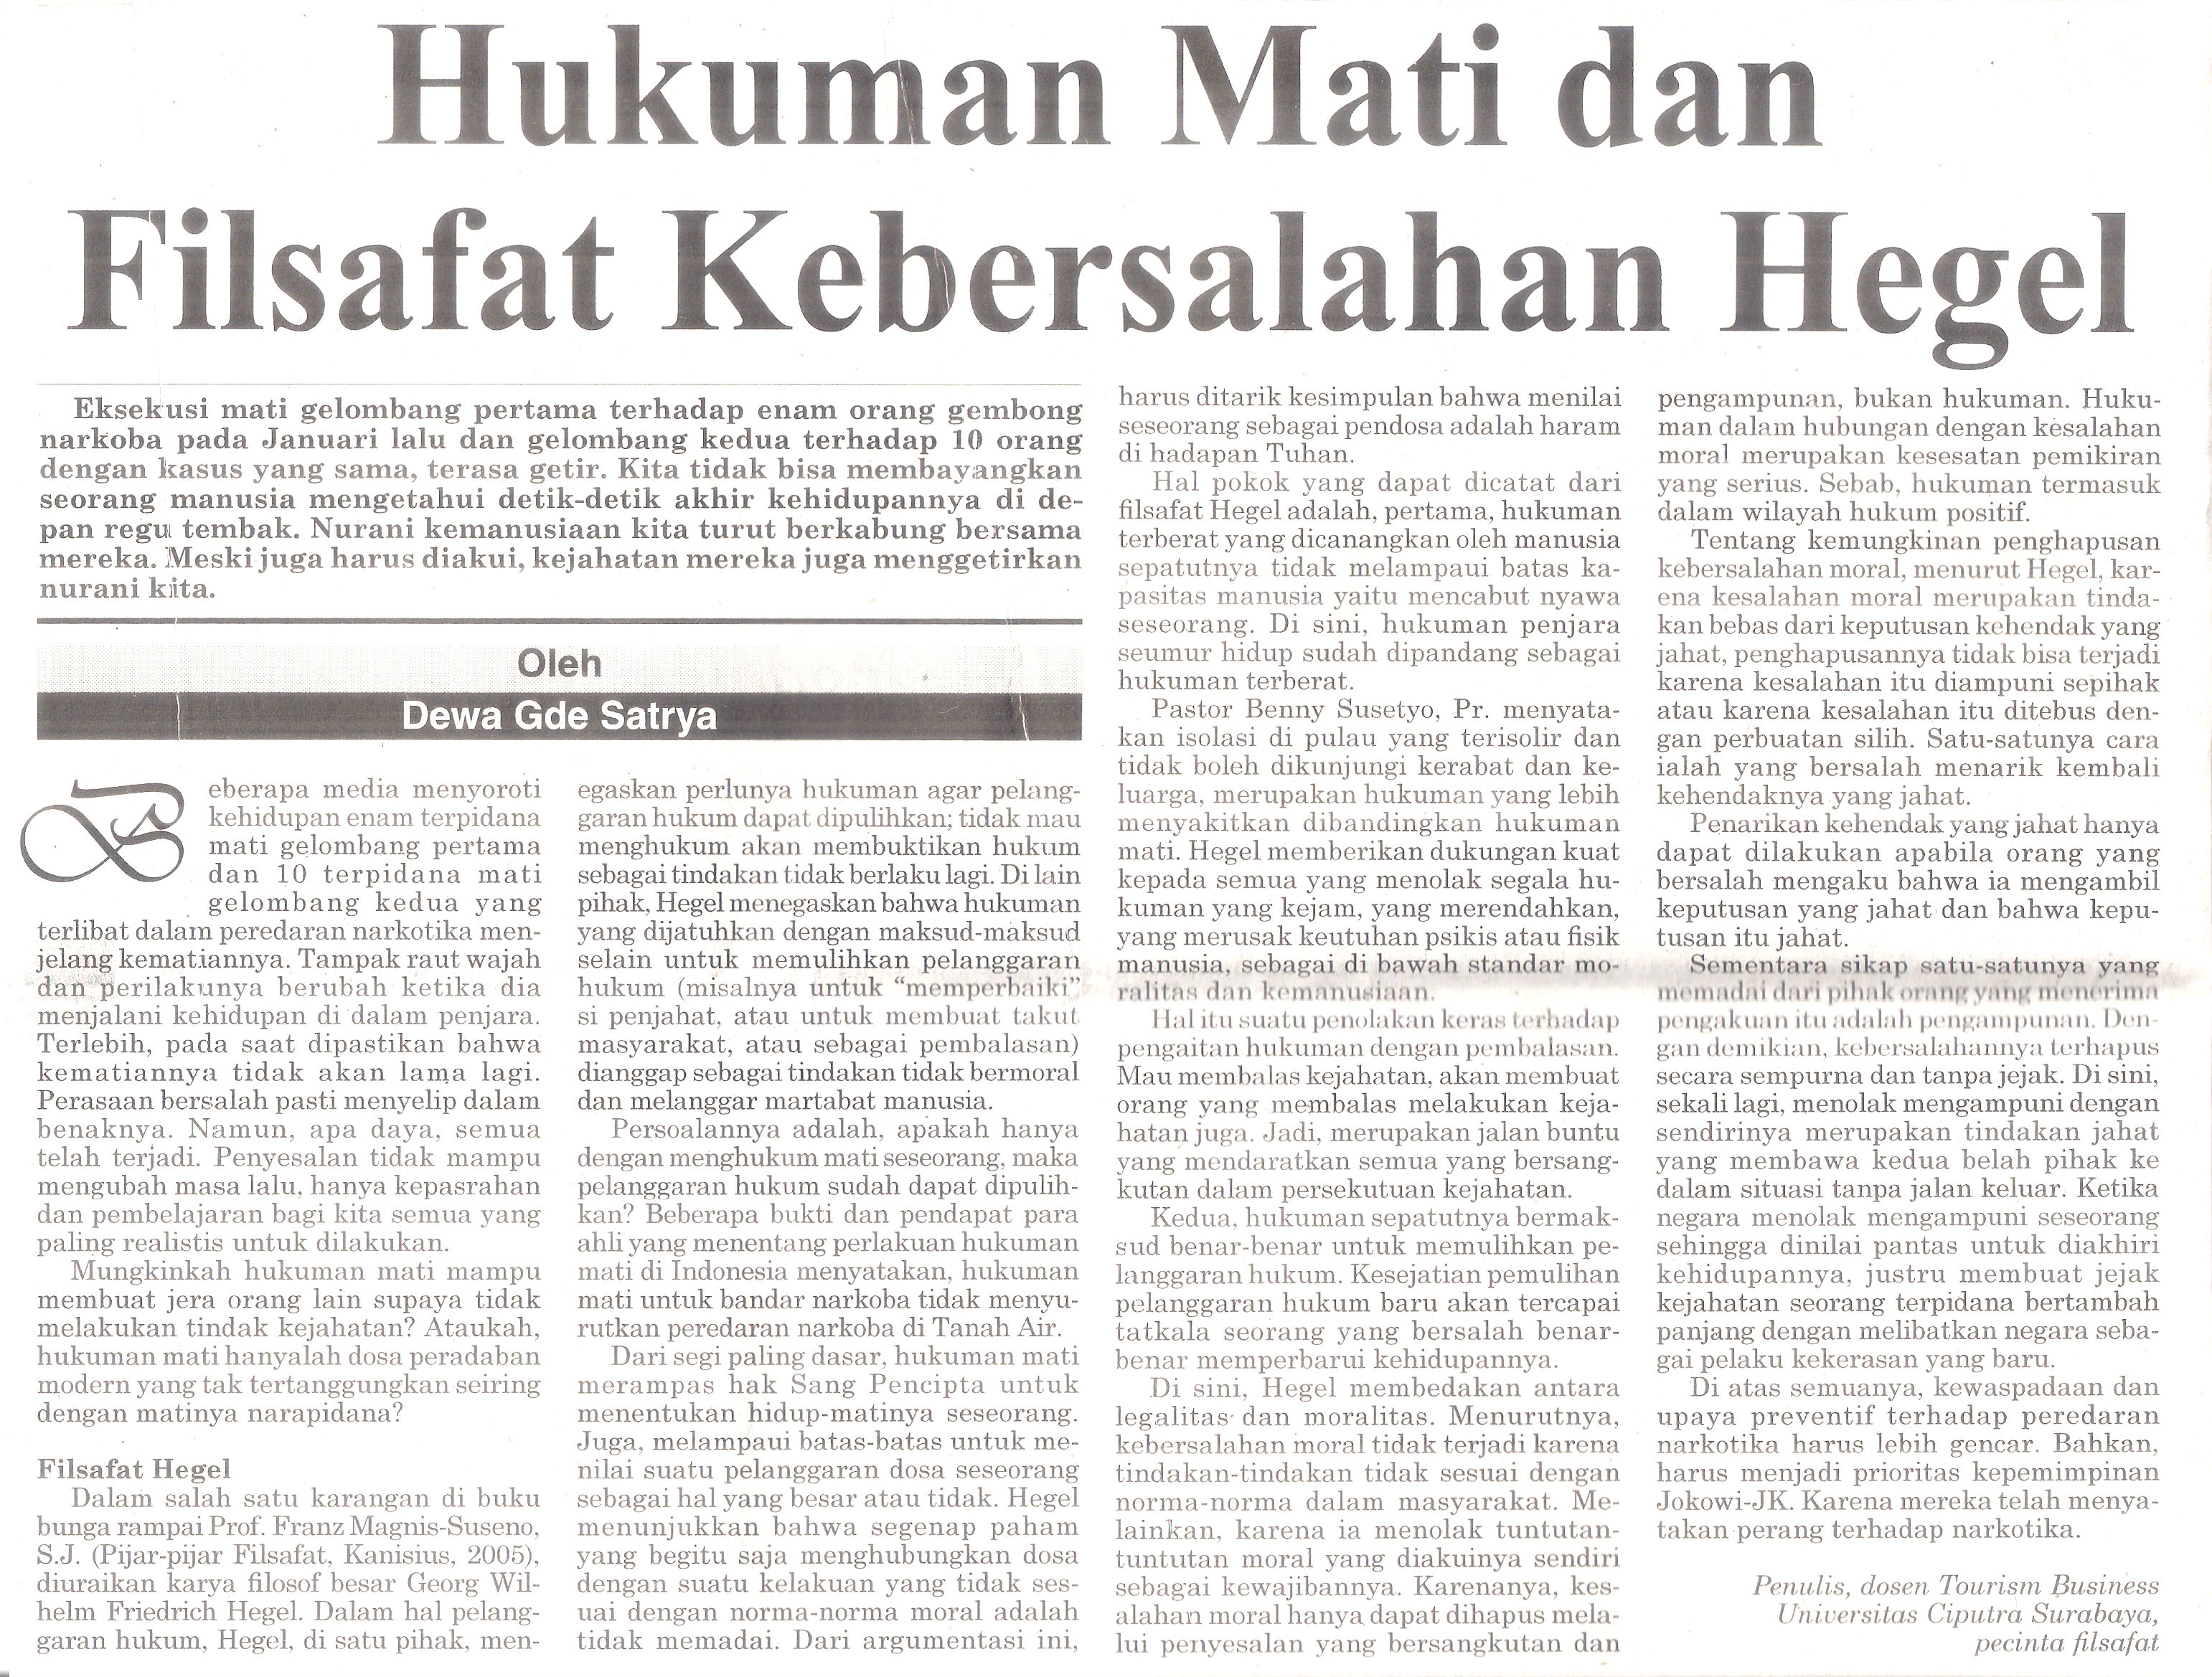 Hukuman Mati dan Filsafat Kebersalahan Hegel Bali Post 7 Maret 2015